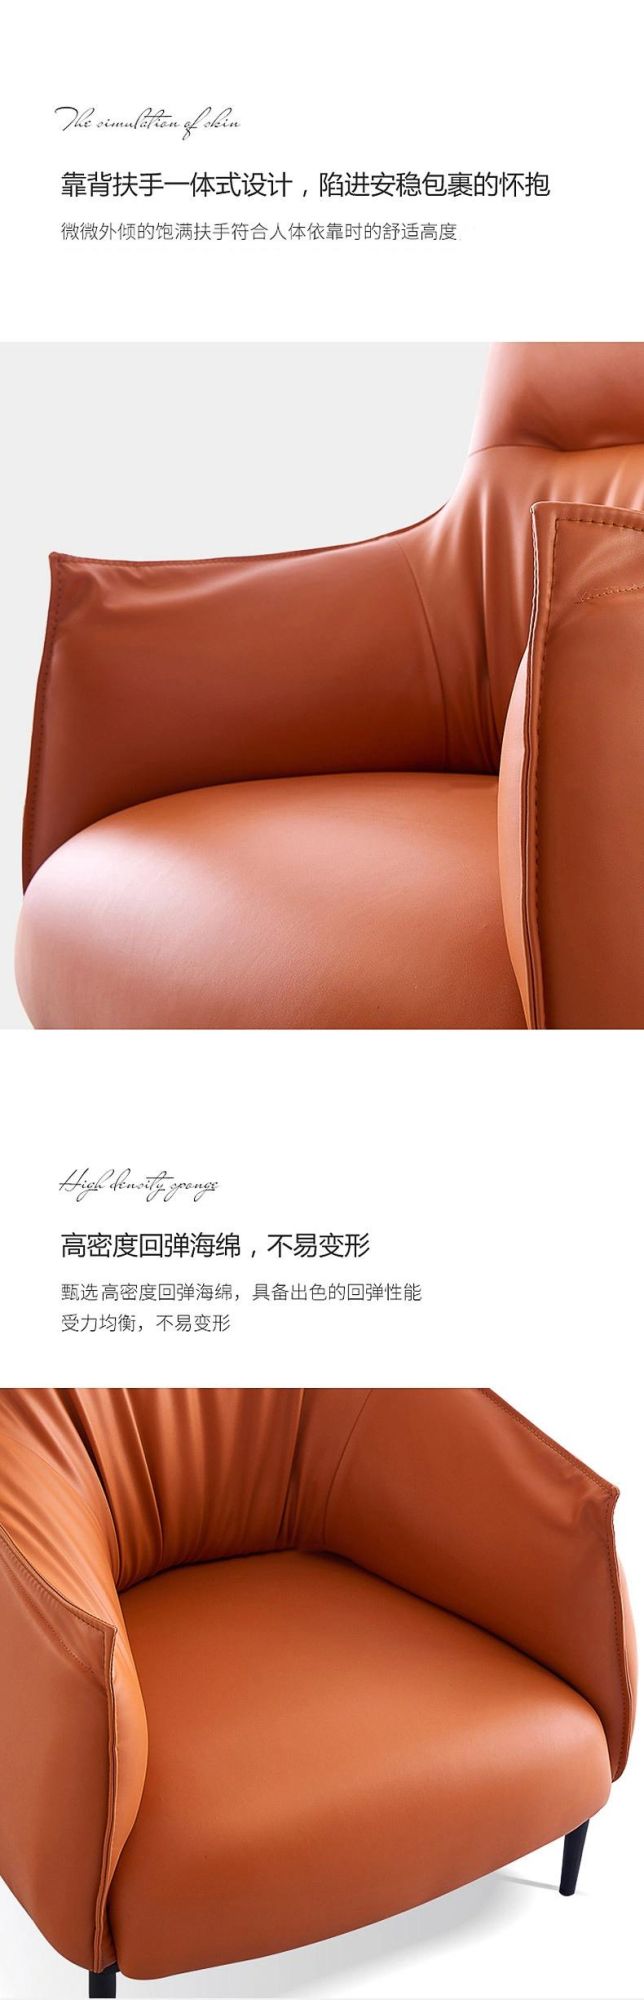 European Style Single Sofa Chair Home Lazy Designer Leisure Chair